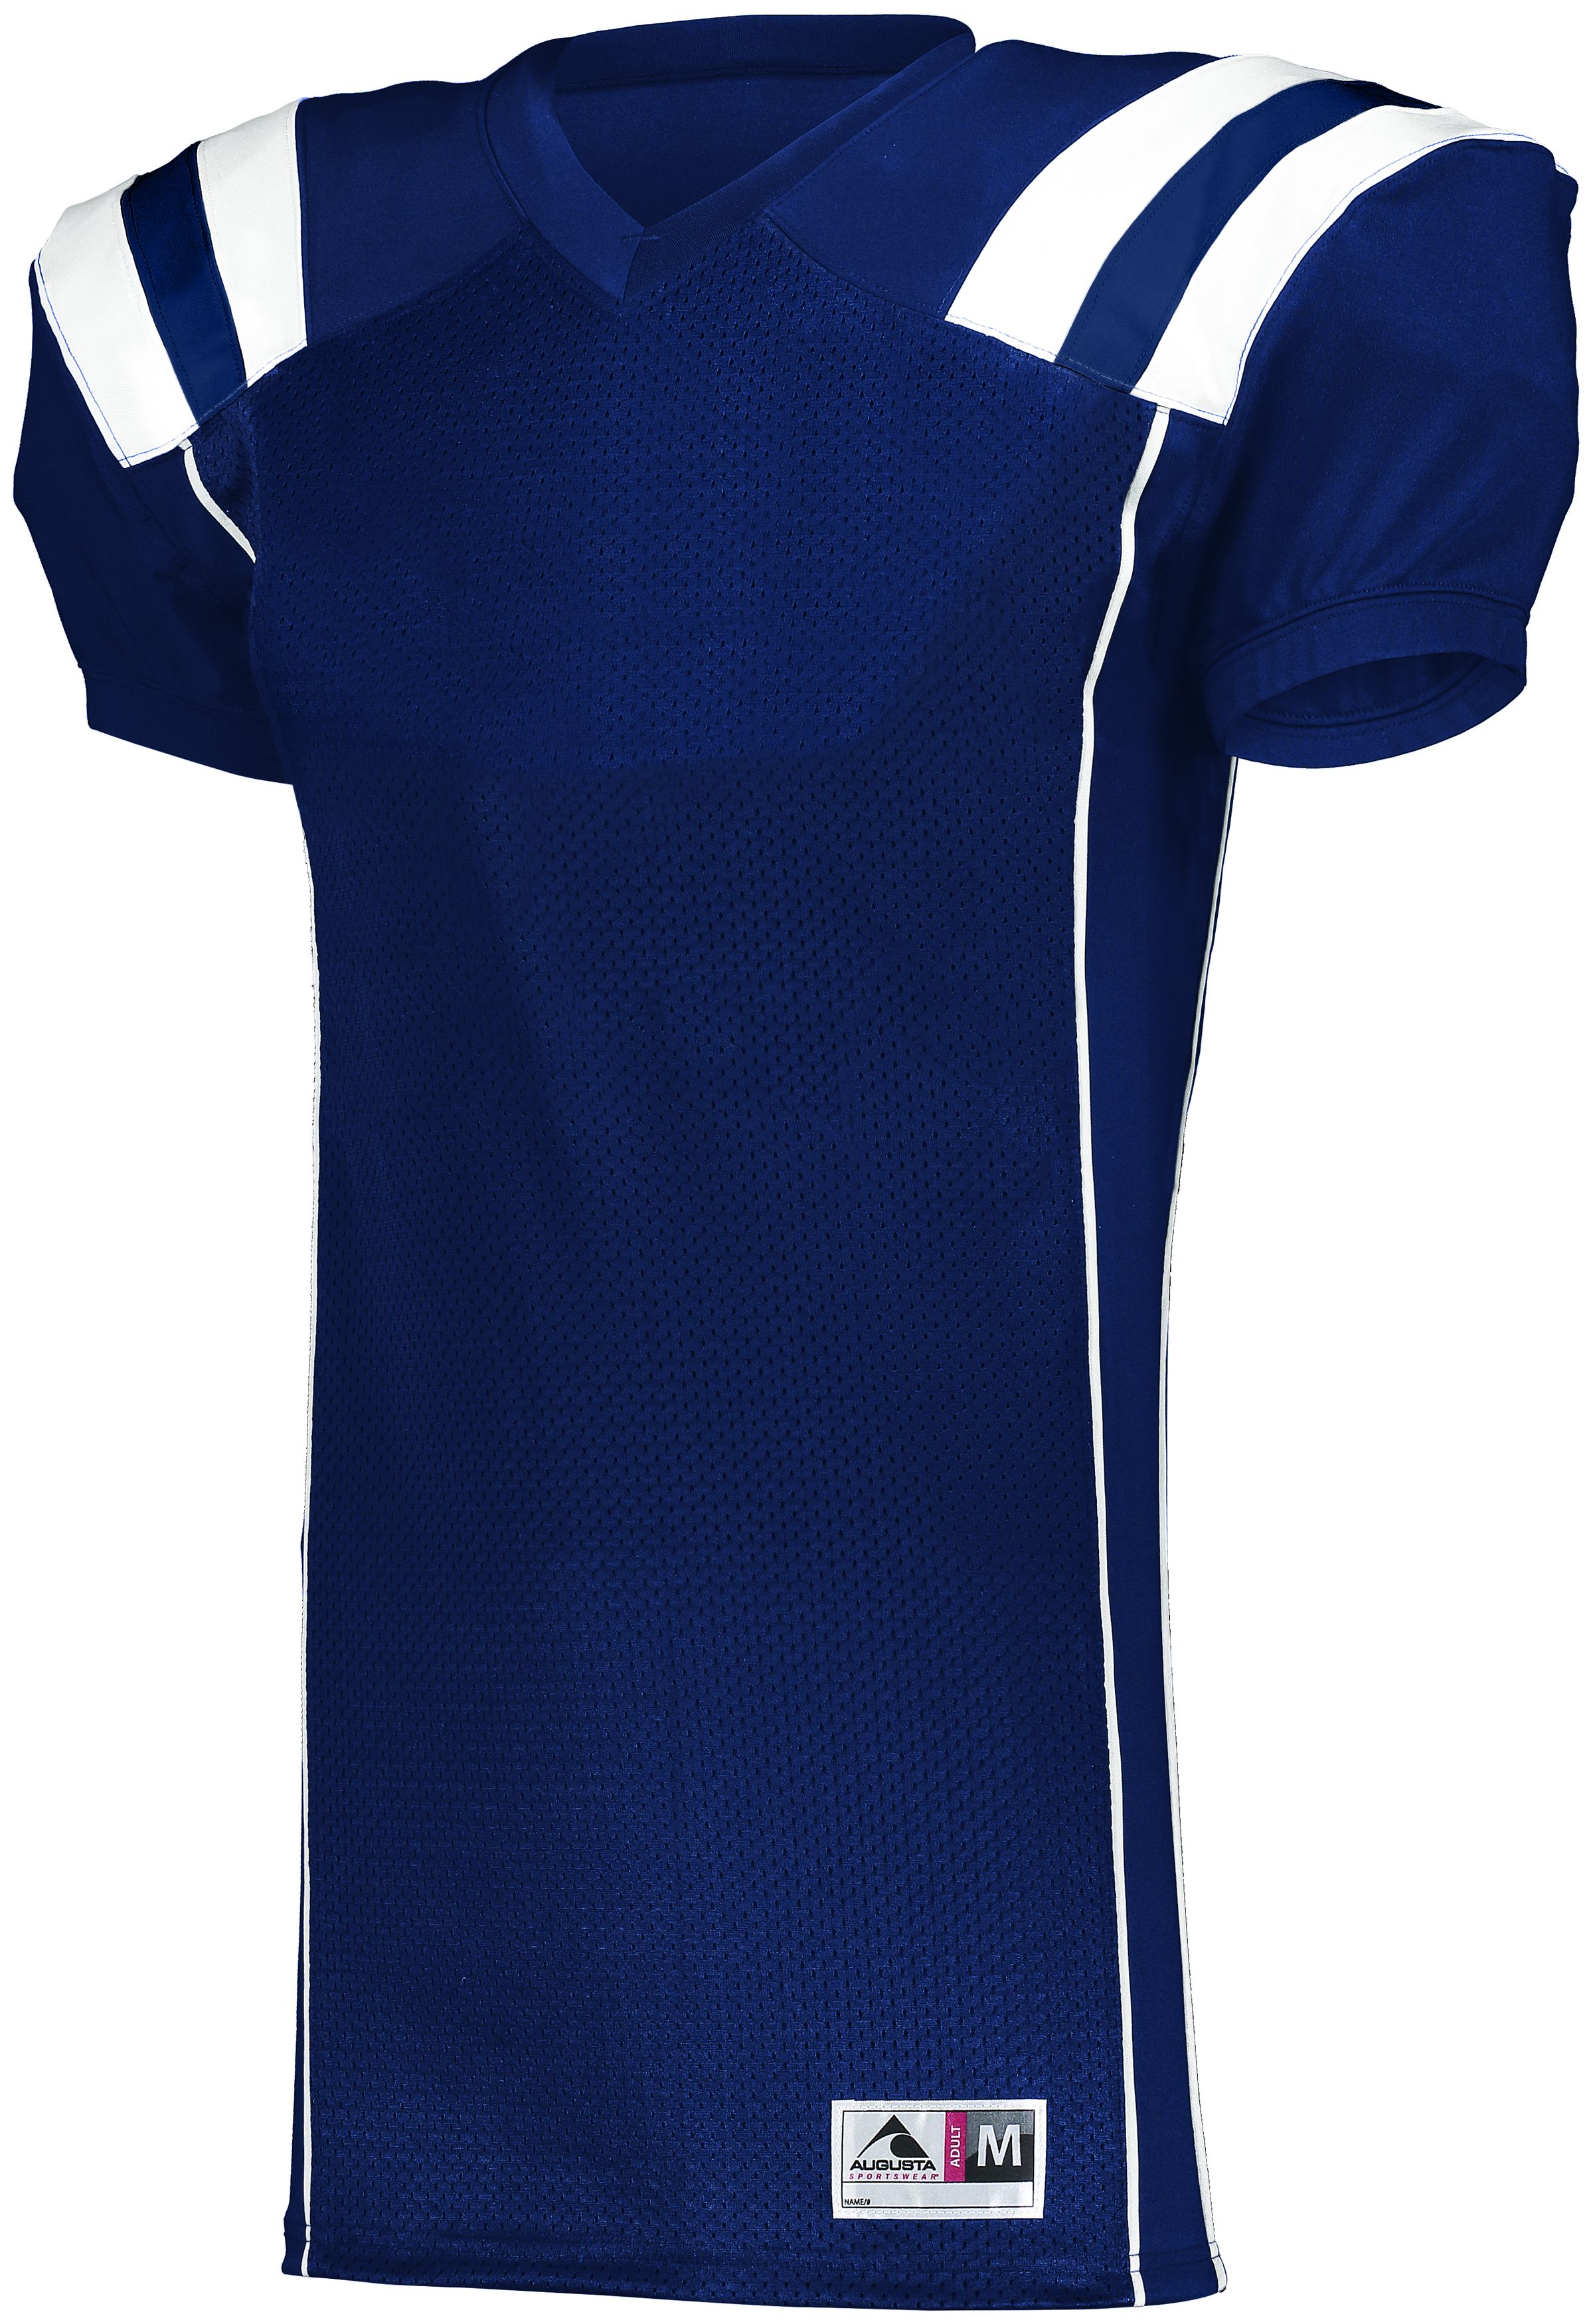 Augusta Sportswear 9581 - Youth Tform Football Jersey